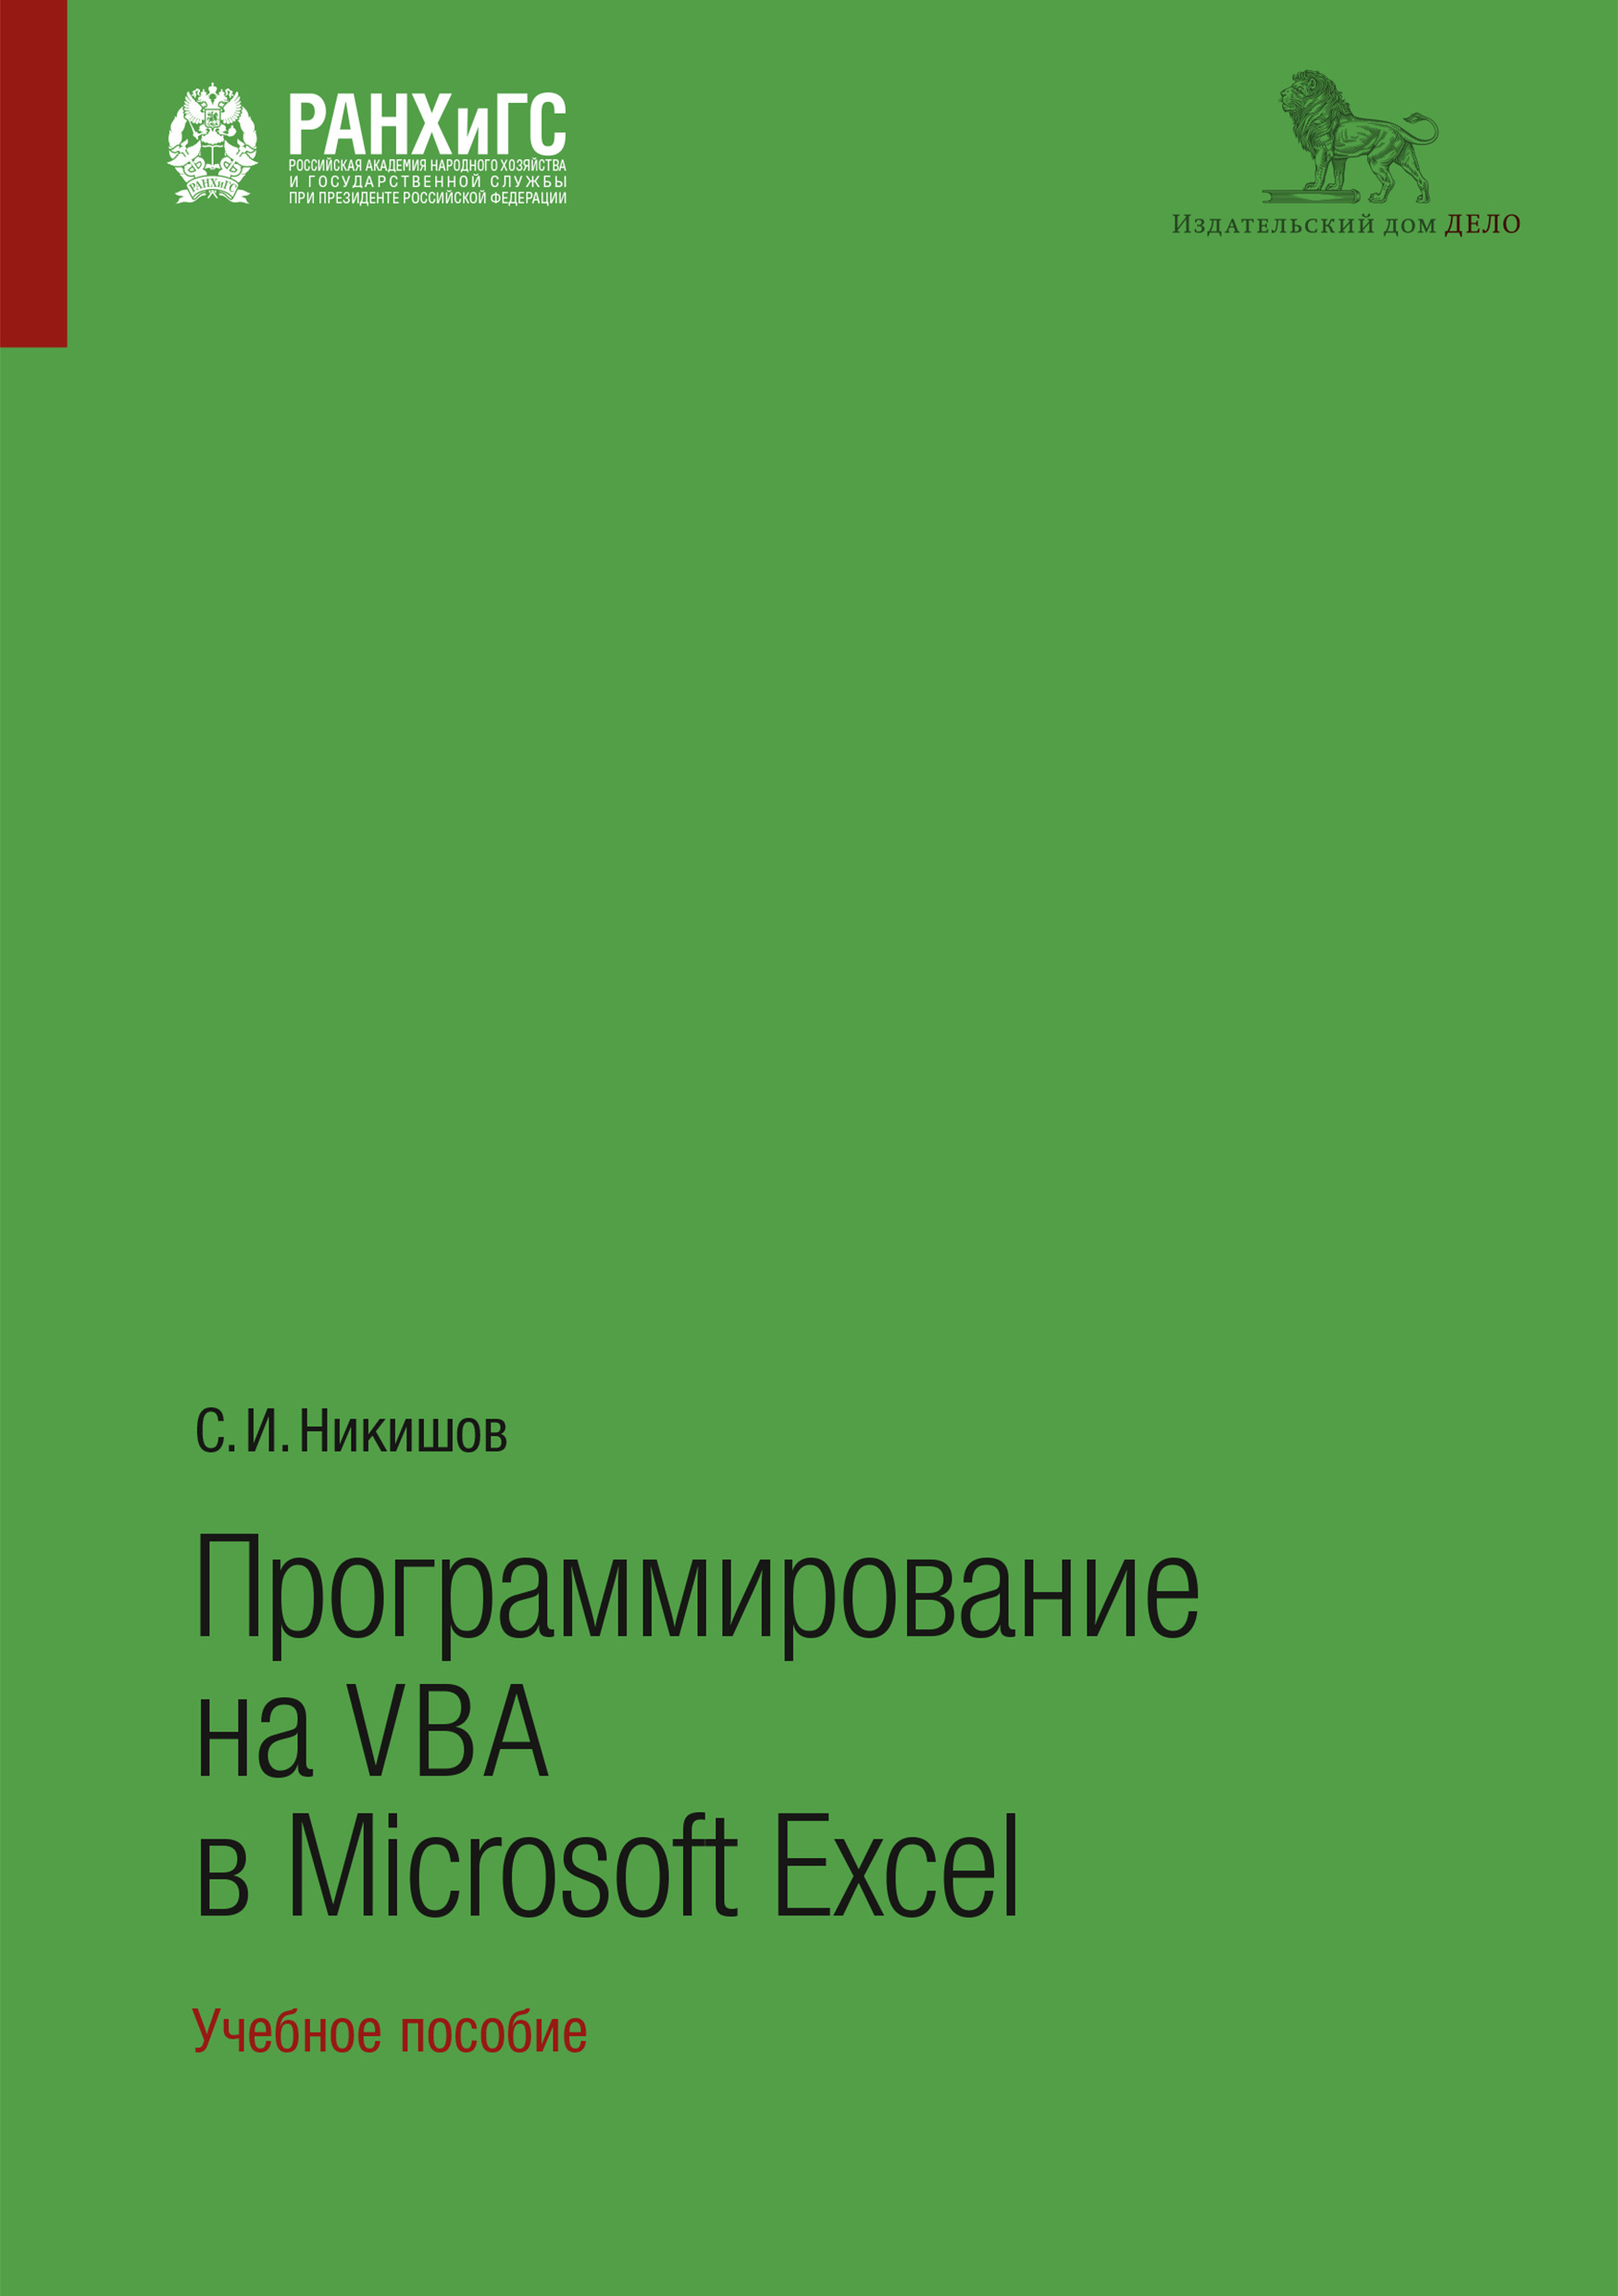 Книга  Программирование на VBA в Microsoft Excel созданная C. И. Никишов может относится к жанру информатика и вычислительная техника, программирование. Стоимость электронной книги Программирование на VBA в Microsoft Excel с идентификатором 50976779 составляет 199.00 руб.